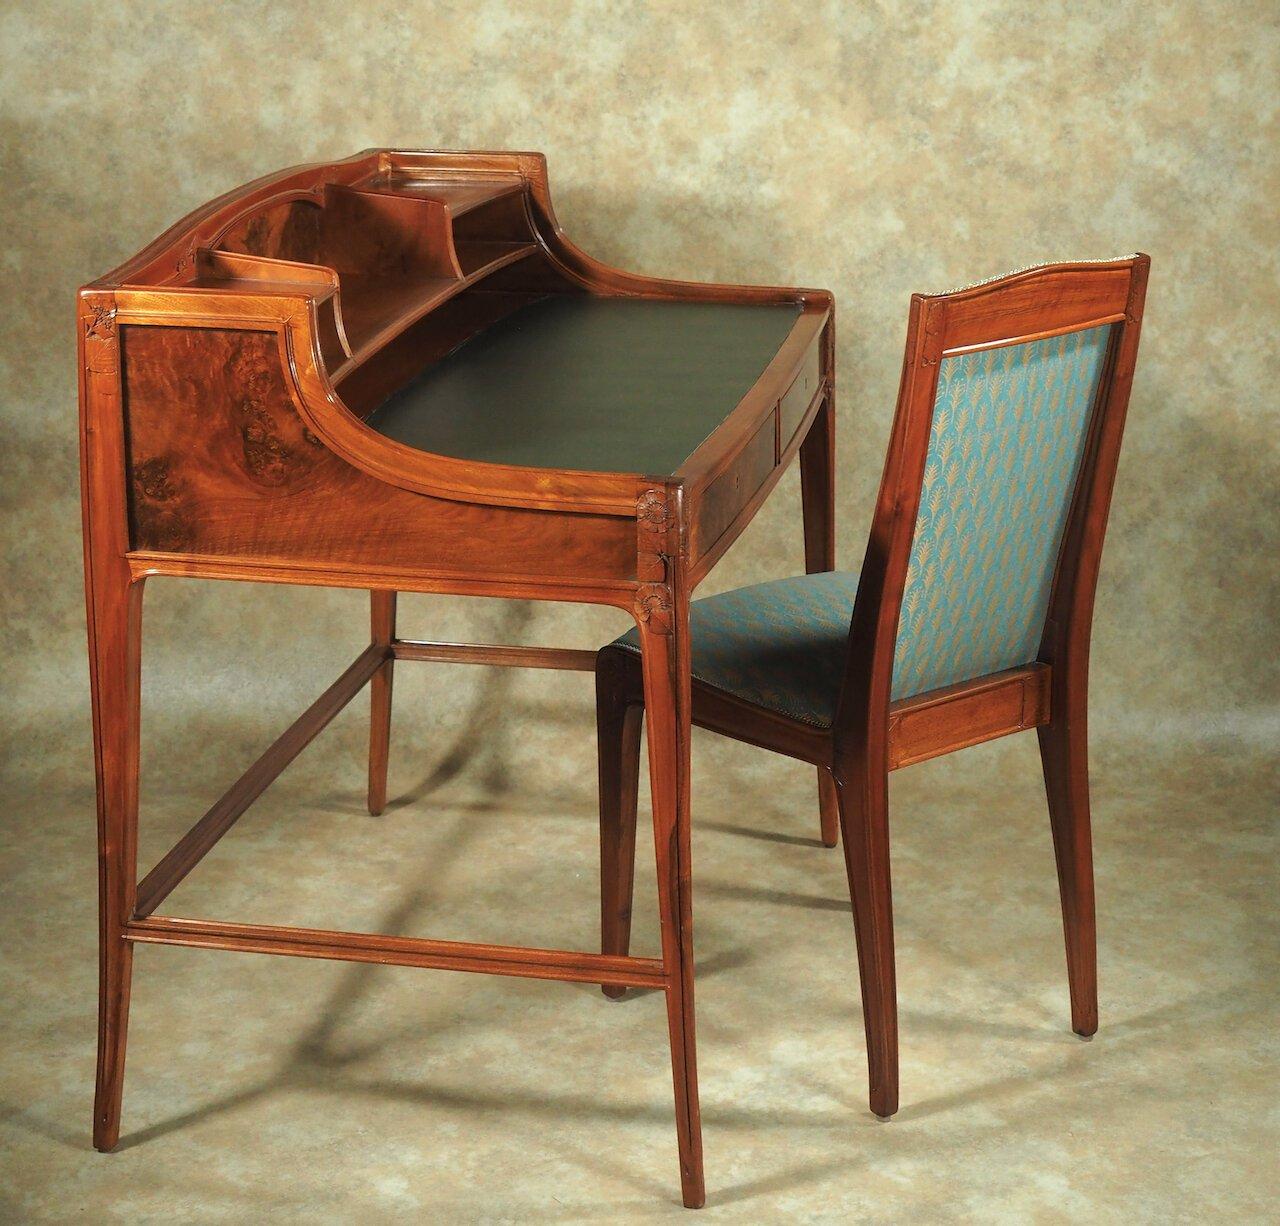 Französischer Schreibtisch und Sessel von Leon Jallot aus geschnitztem Nussbaum und Nussbaummaser, um 1910. Auf diesem Schreibtisch sind die schönen offenen Himbeerblüten und -blätter von Jallot abgebildet. Der Schreibtisch ist insgesamt 37,5